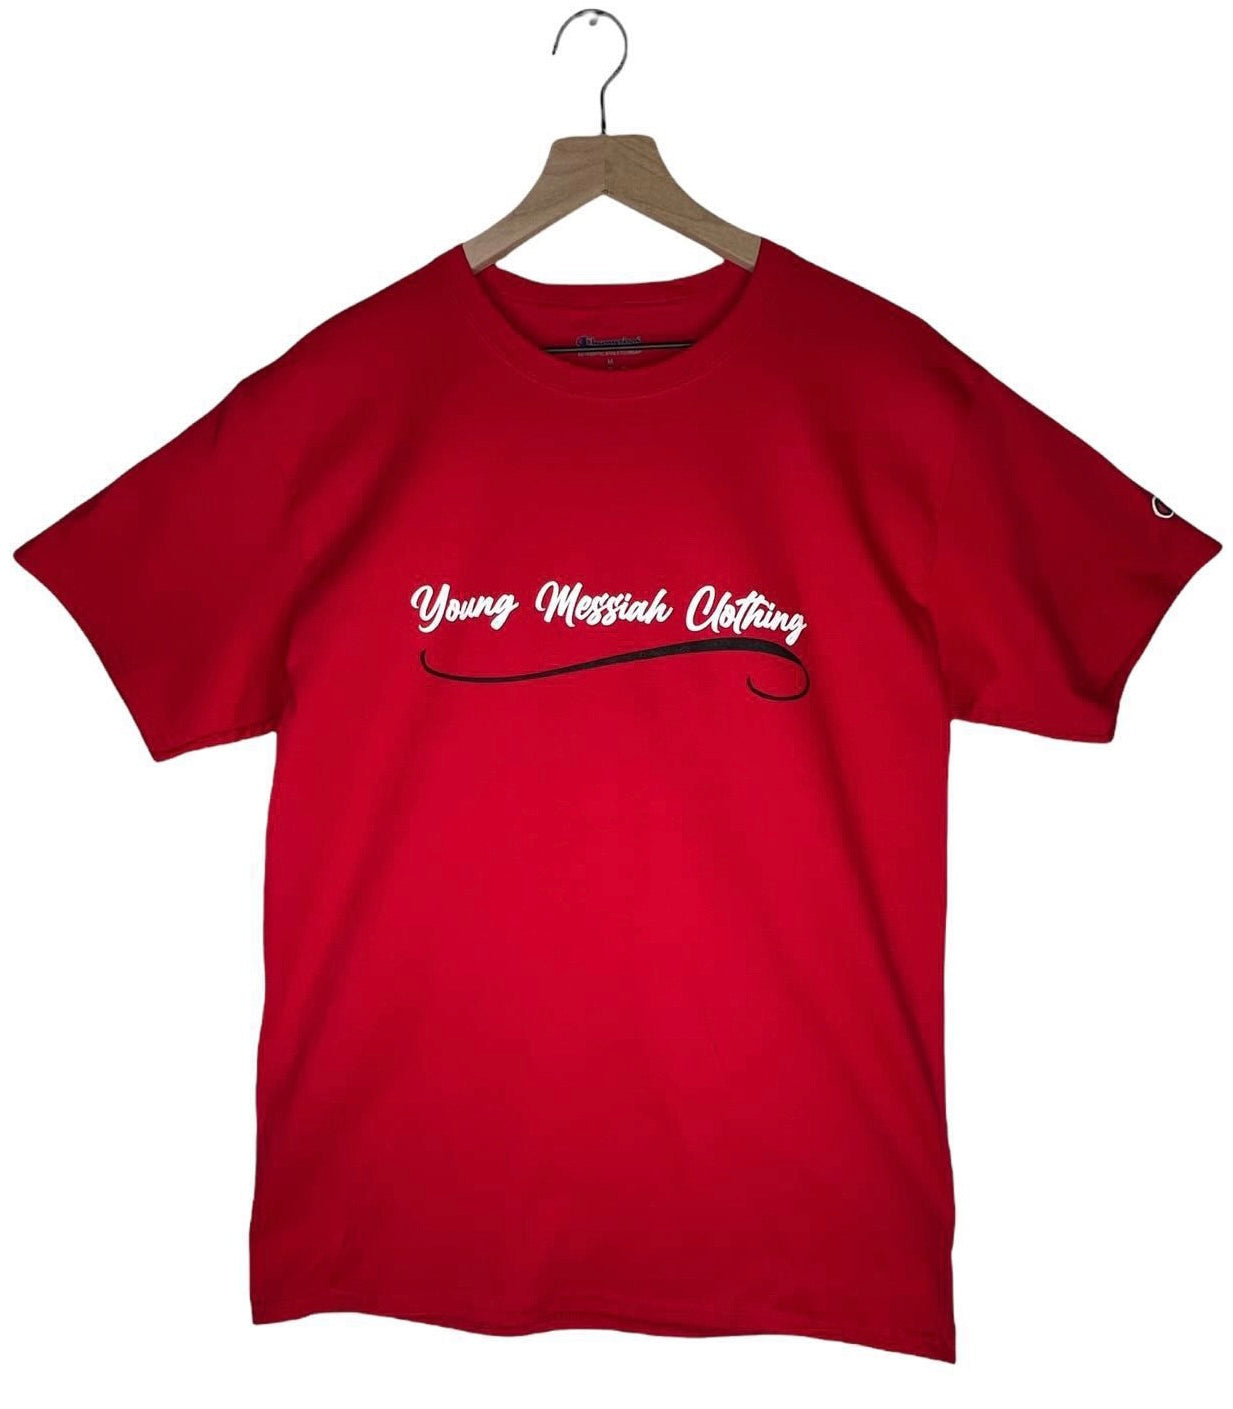 Young Messiah Clothing (YMC) Red Logo T-Shirt